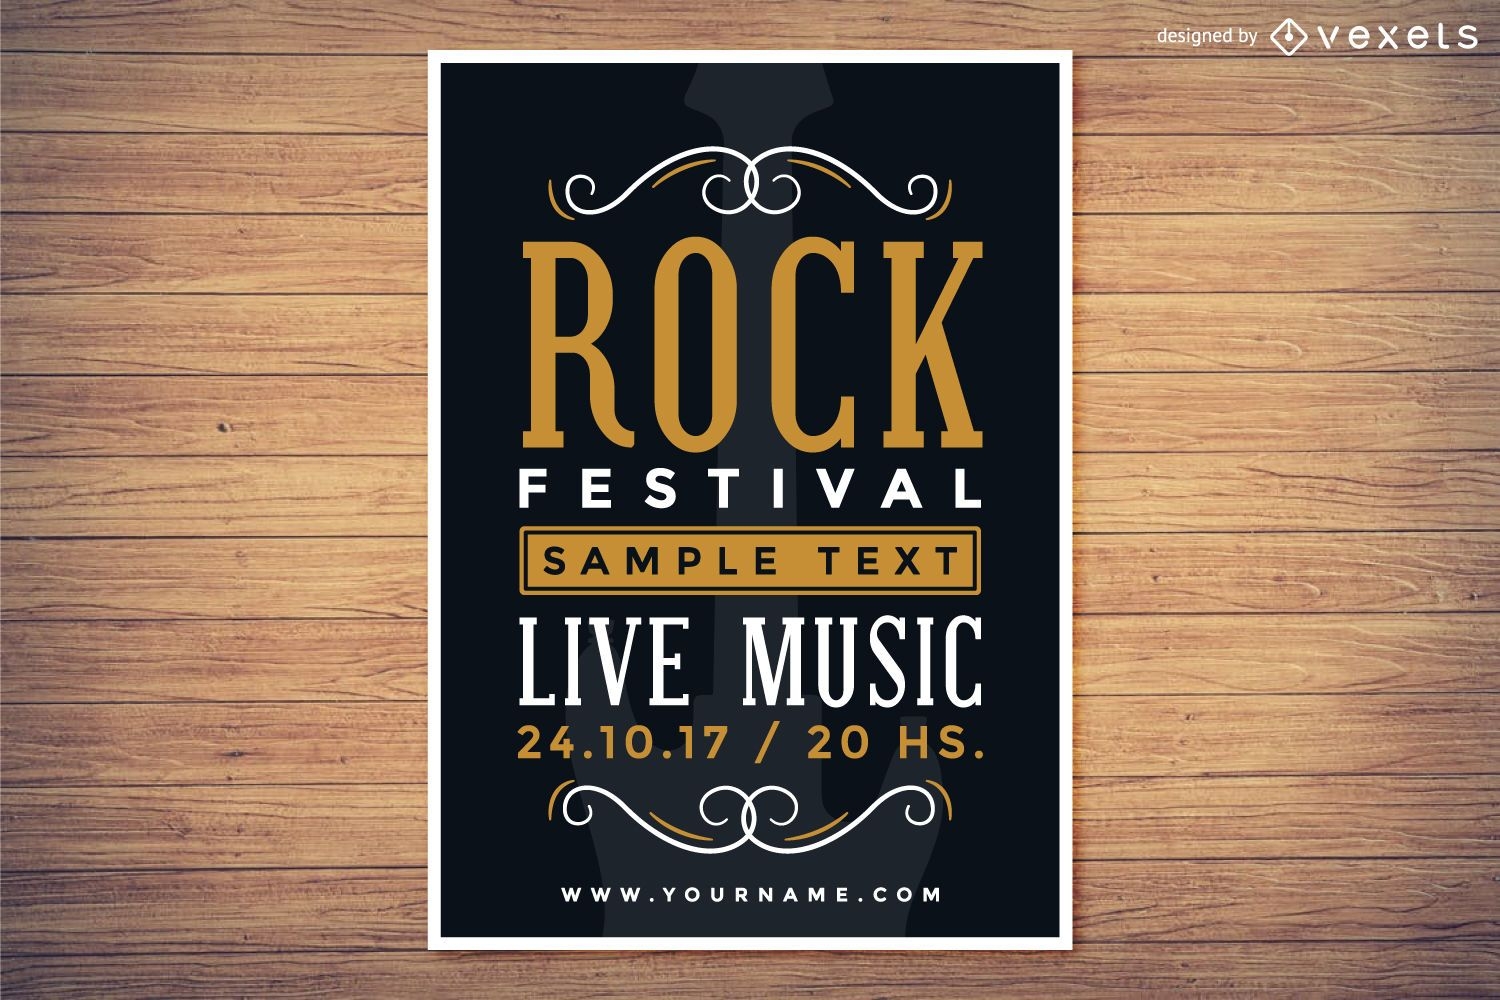 Cartel del festival de rock